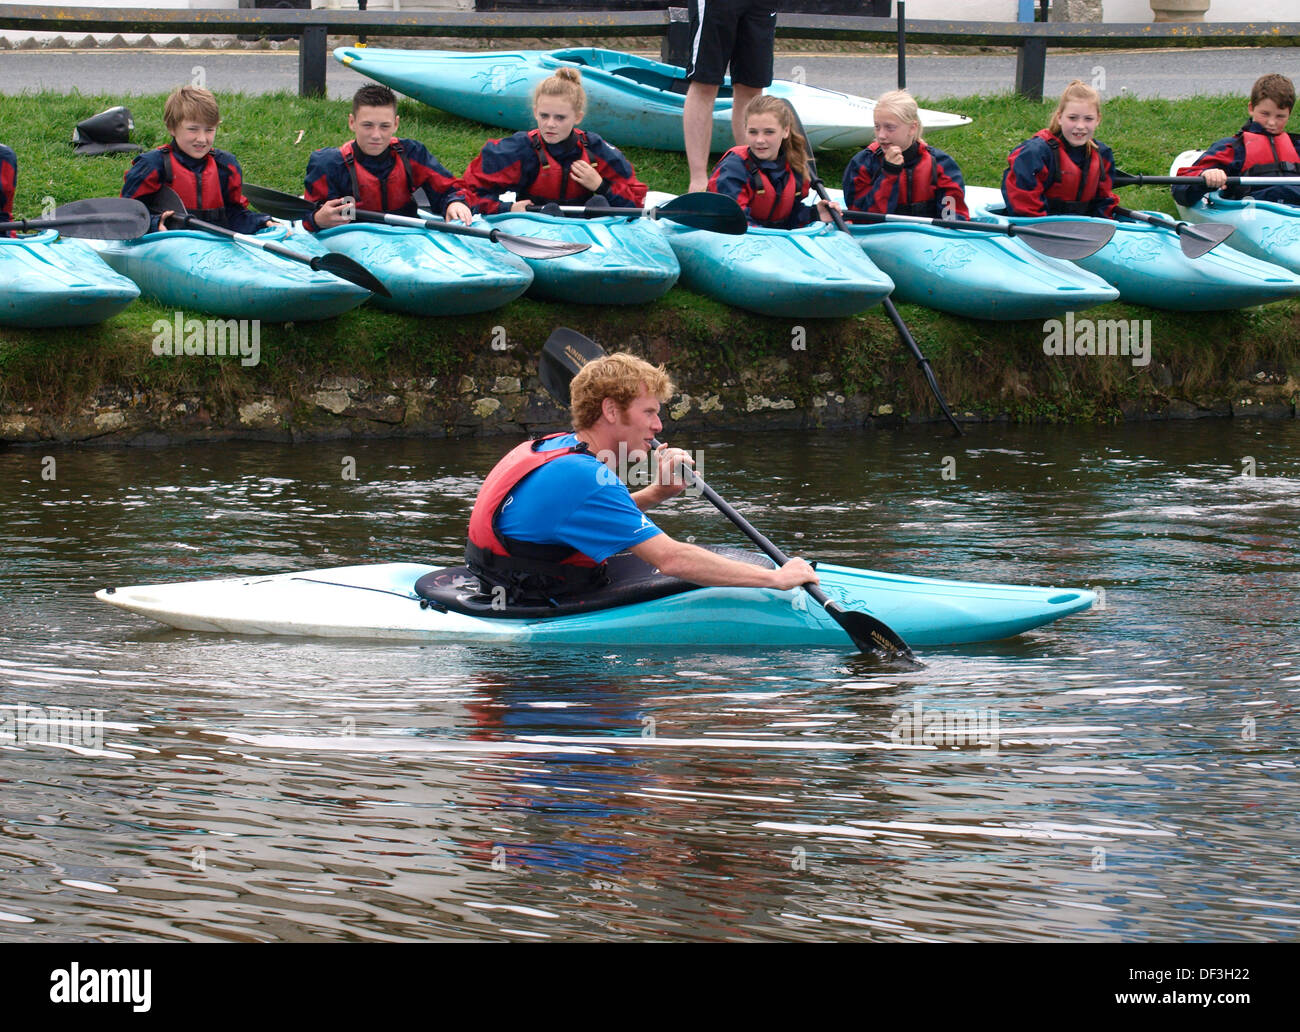 Los niños siendo instruidos sobre como kayak, UK 2013 Foto de stock